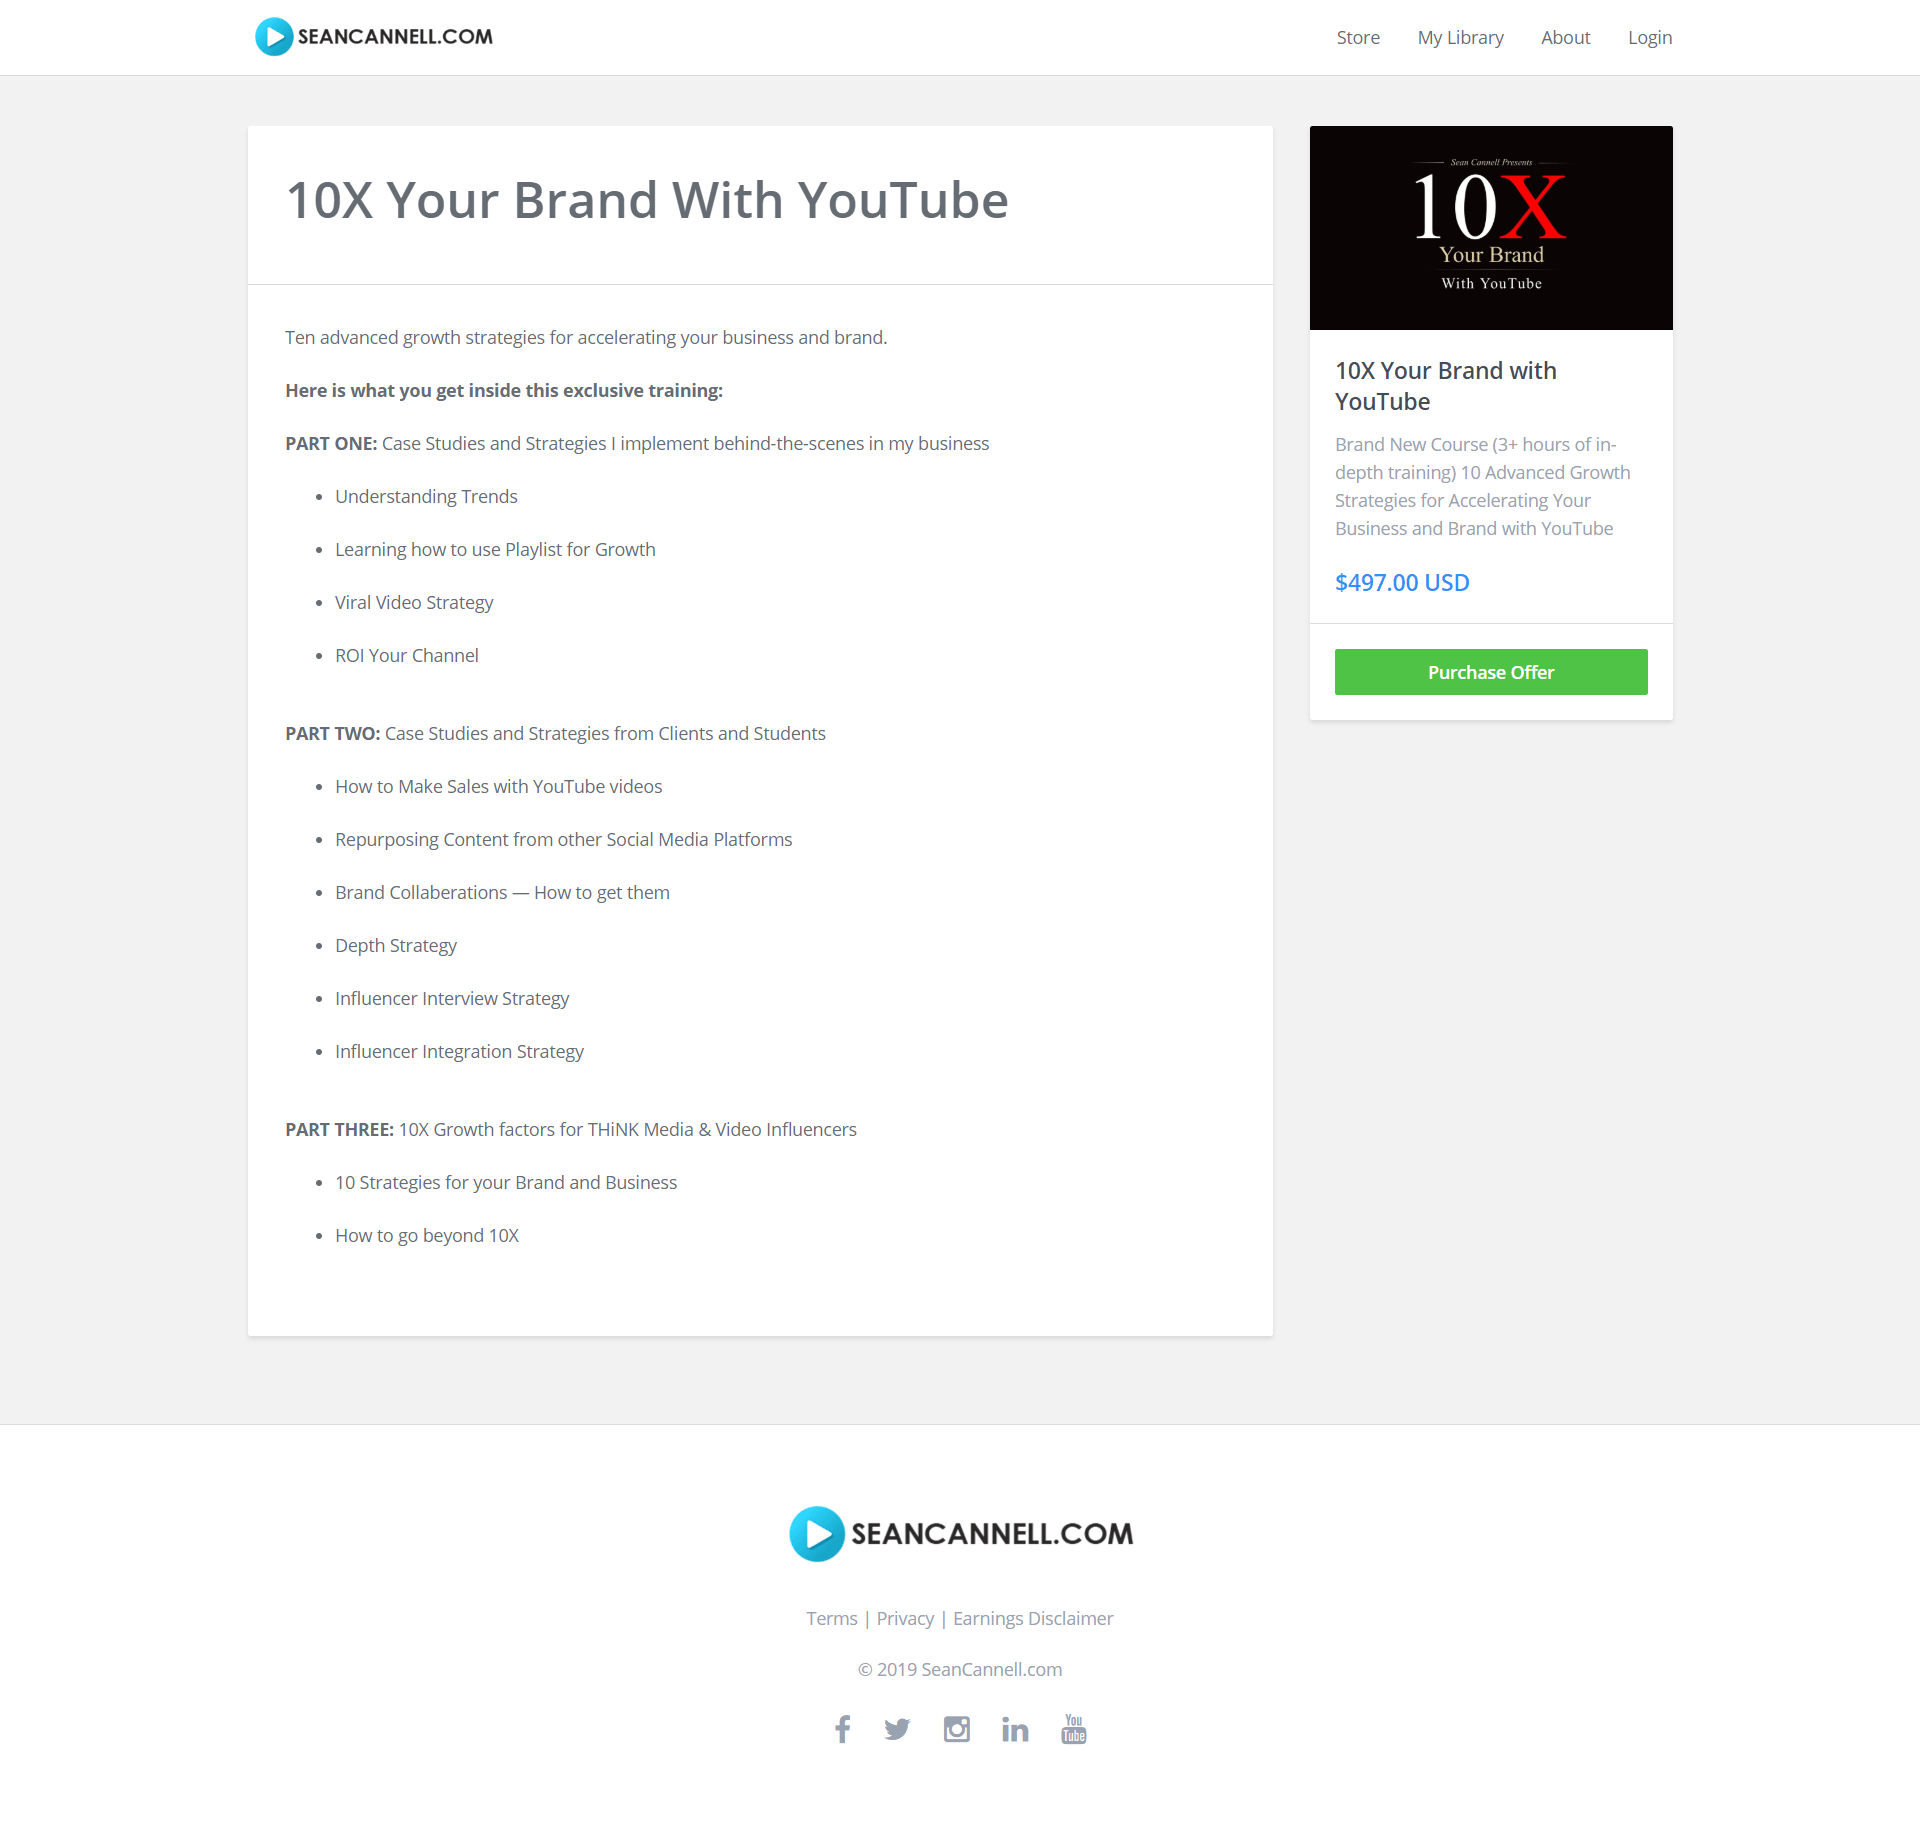 全新的三小时的深度培训 - 十个高效的策略教你利用YouTube加速您的业务和品牌成长（10X Your Brand with YouTube）